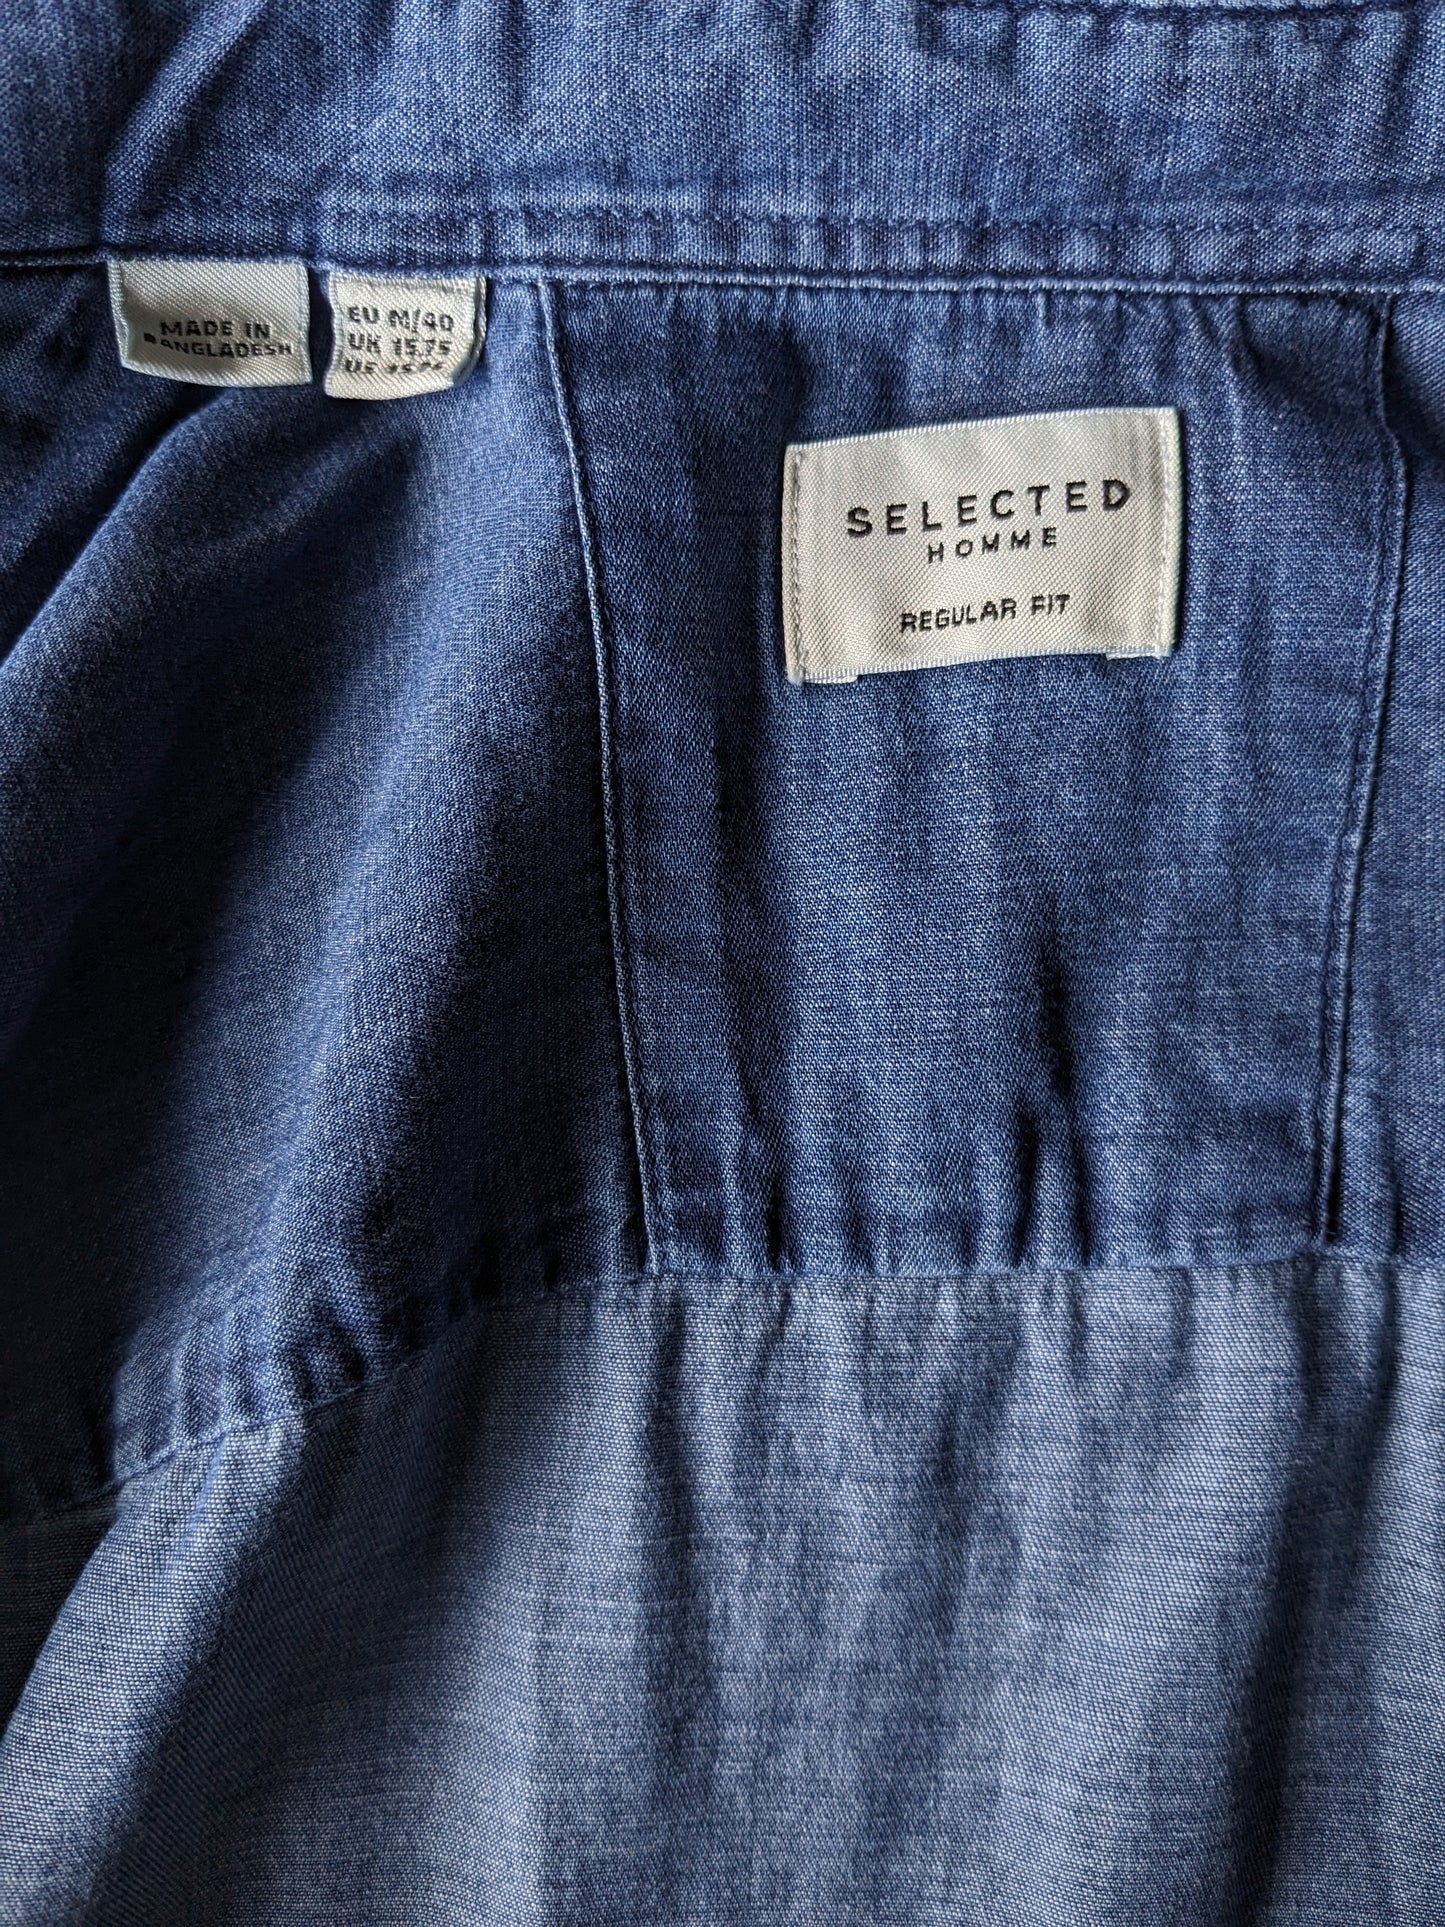 Ausgewählte Homme Jeans -Look -Shirt. Blau gefärbt. Größe M. Regelmäßige Passform.